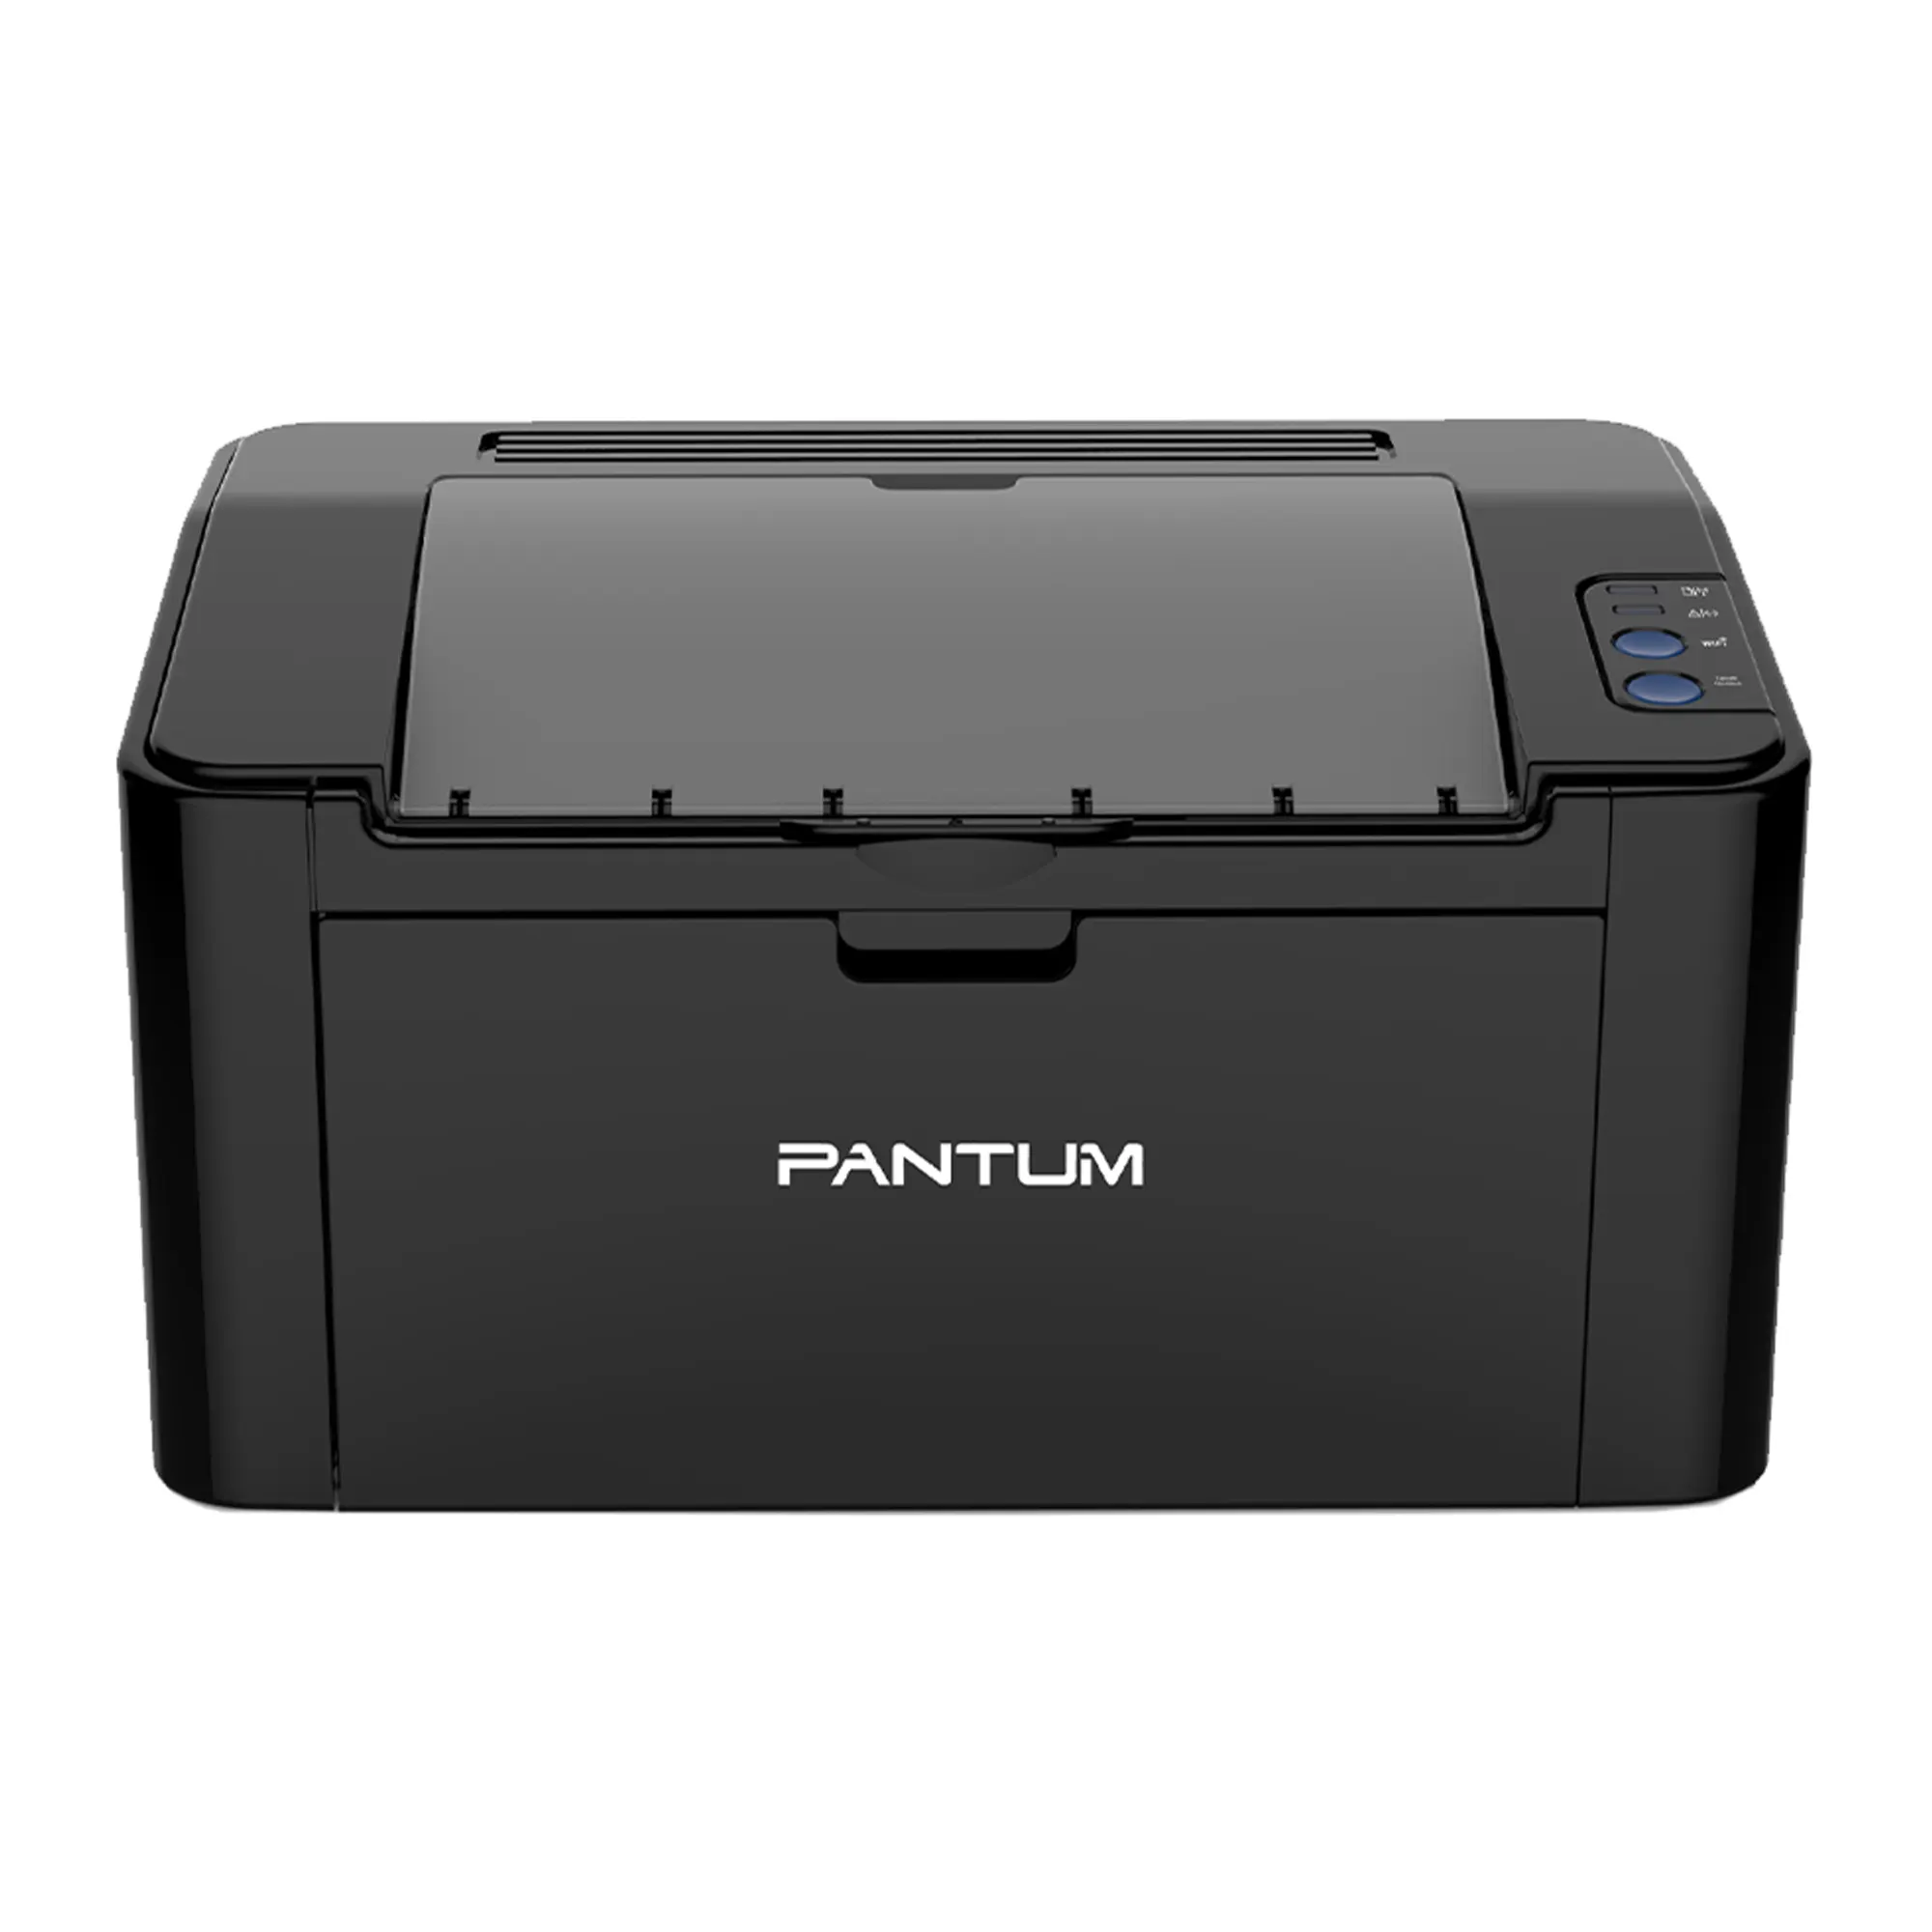 Купить принтер pantum p2207. Принтер лазерный Pantum p2500w. Принтер лазерный Pantum p2207. Pantum p2516. Принтер лазерный Pantum p2518.